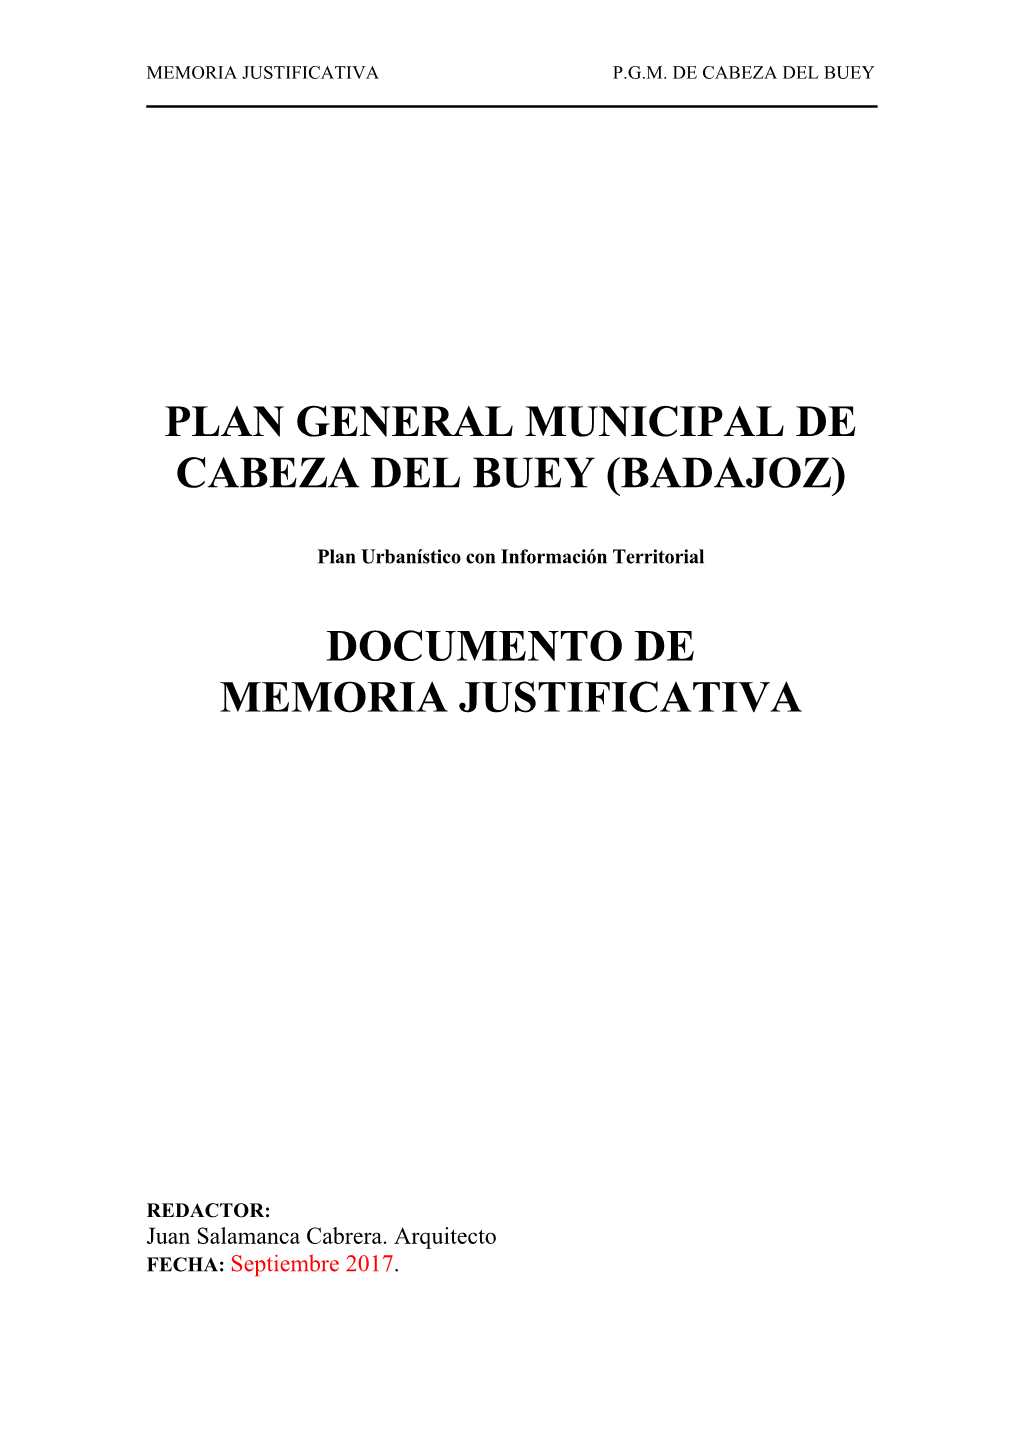 Plan General Municipal De Cabeza Del Buey (Badajoz) Documento De Memoria Justificativa